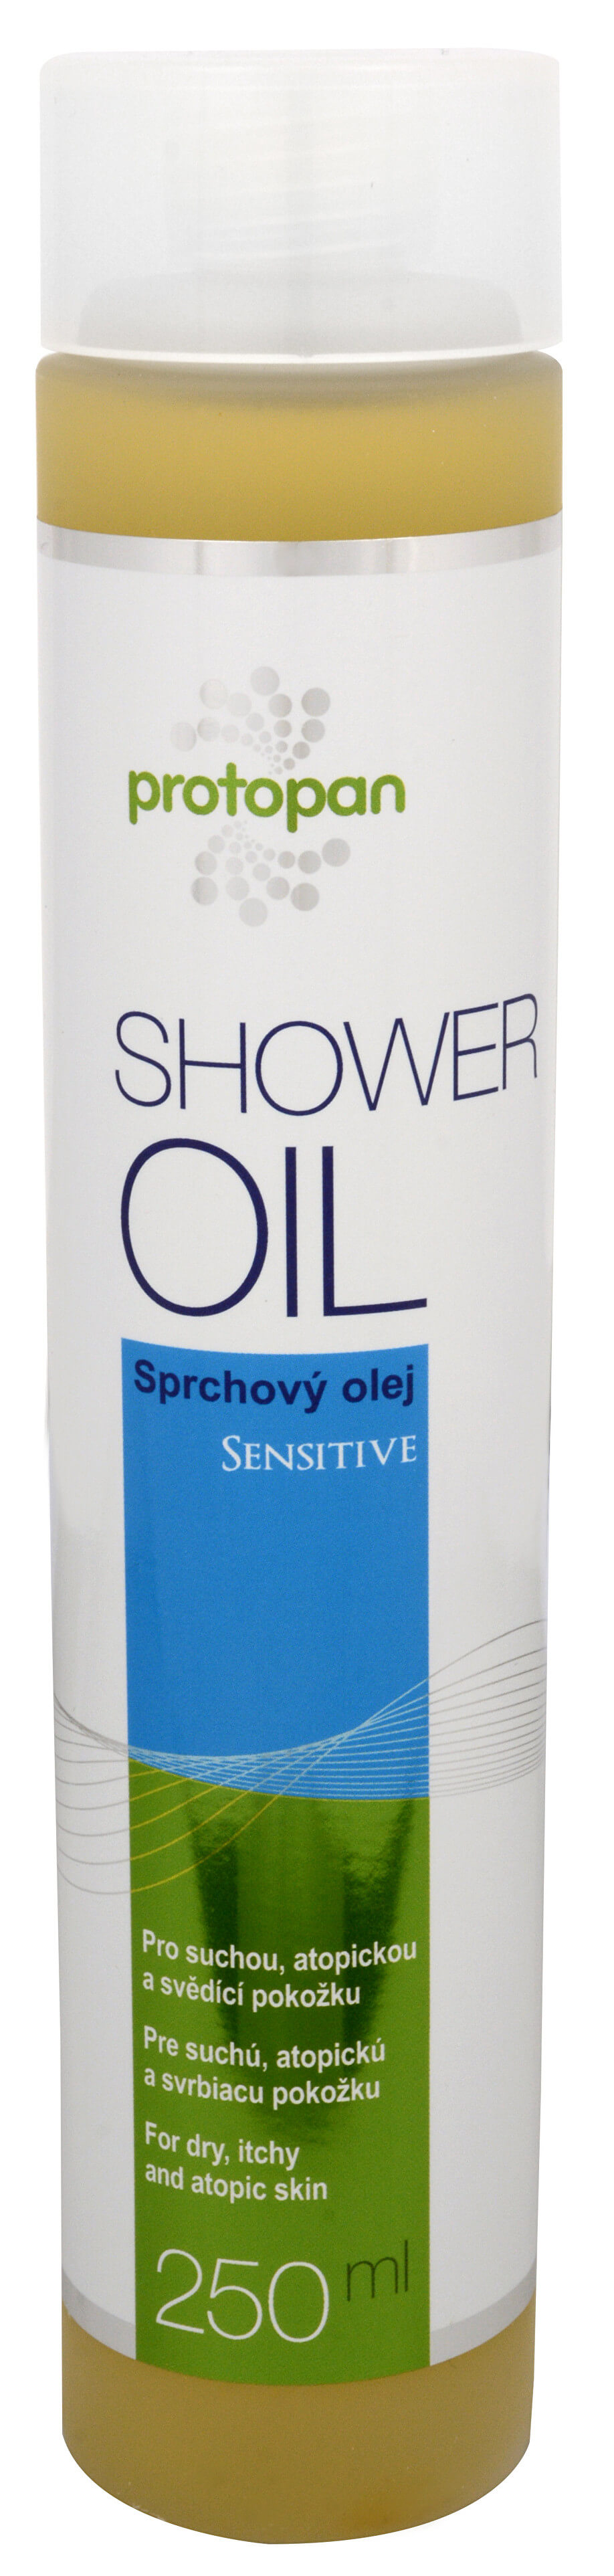 Zobrazit detail výrobku Protopan Shower Oil Sensitive 250 ml + 2 měsíce na vrácení zboží